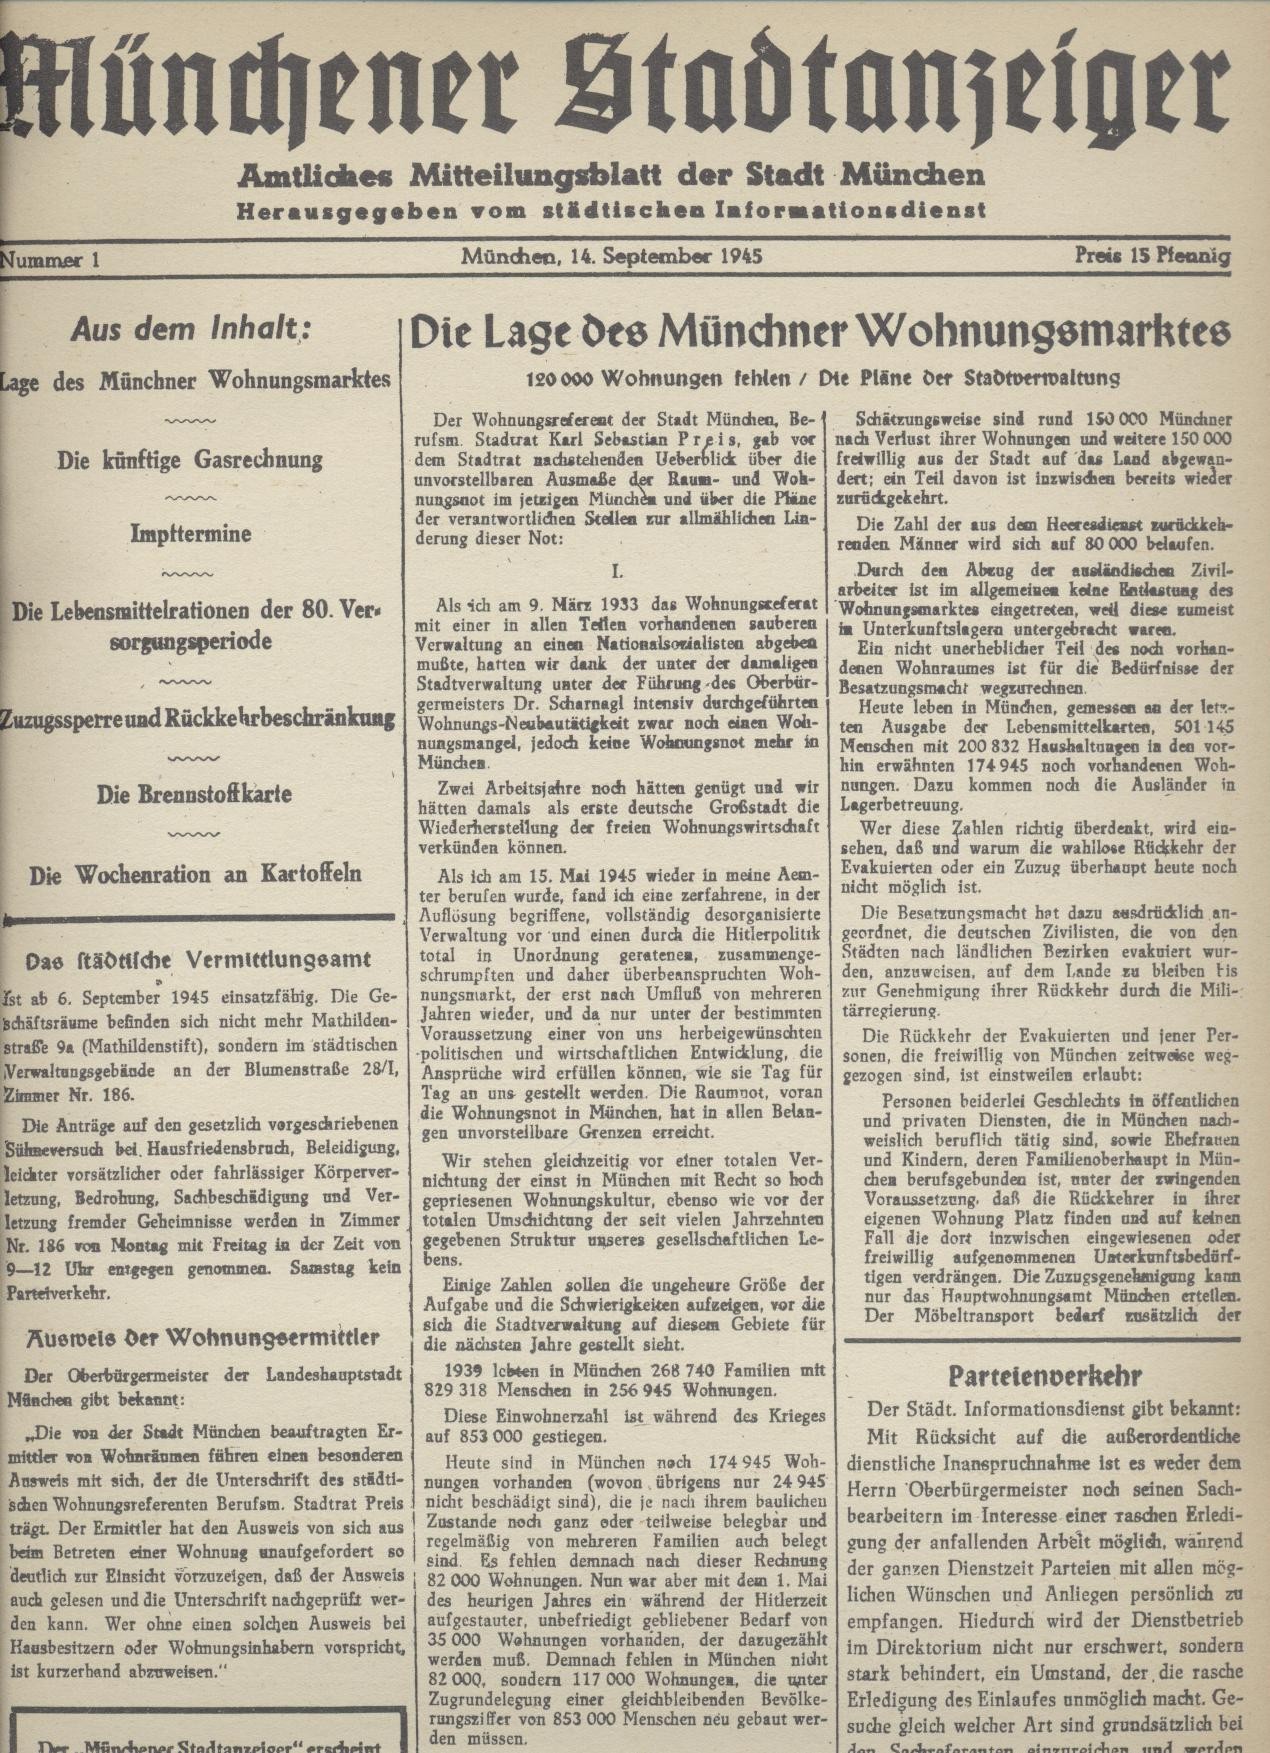 Stadt München (Hrsg.)  Münchener Stadtanzeiger. Amtliches Mitteilungsblatt der Stadt München. Hrsg. vom Städtischen Informationsdienst. Nr. 1 vom 14. September - Nr. 16 vom 27. Dezember 1945. Nachdruck. 